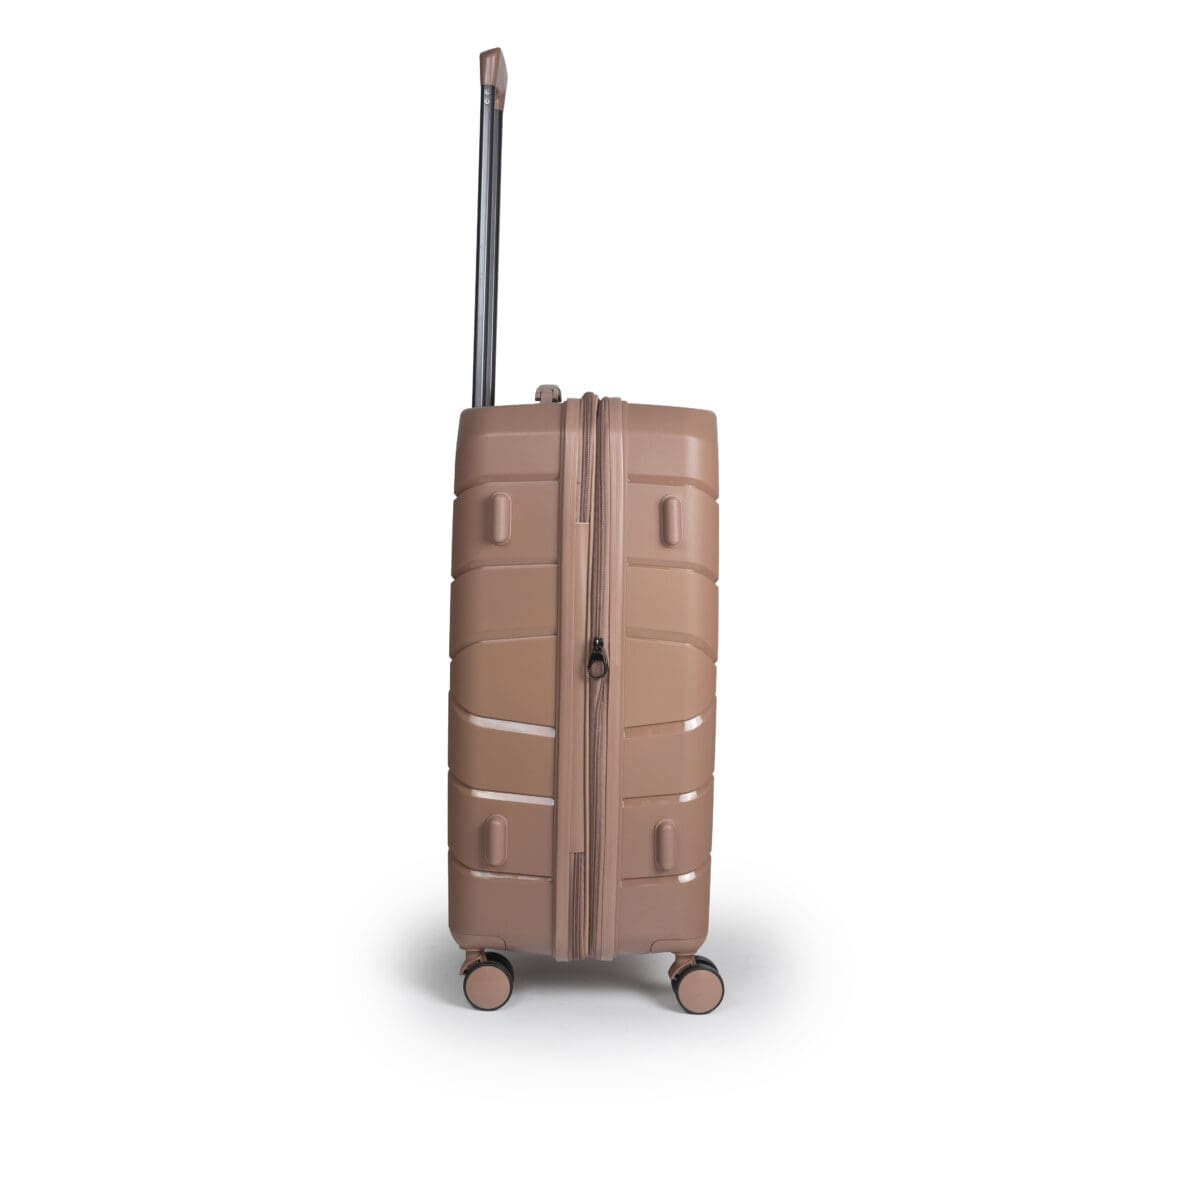 Βαλίτσα μεσαία με tsa lock διπλά ροδάκια από πολυπροπυλένιο άθραυστο υλικό και επέκταση σε ροζ χρώμα